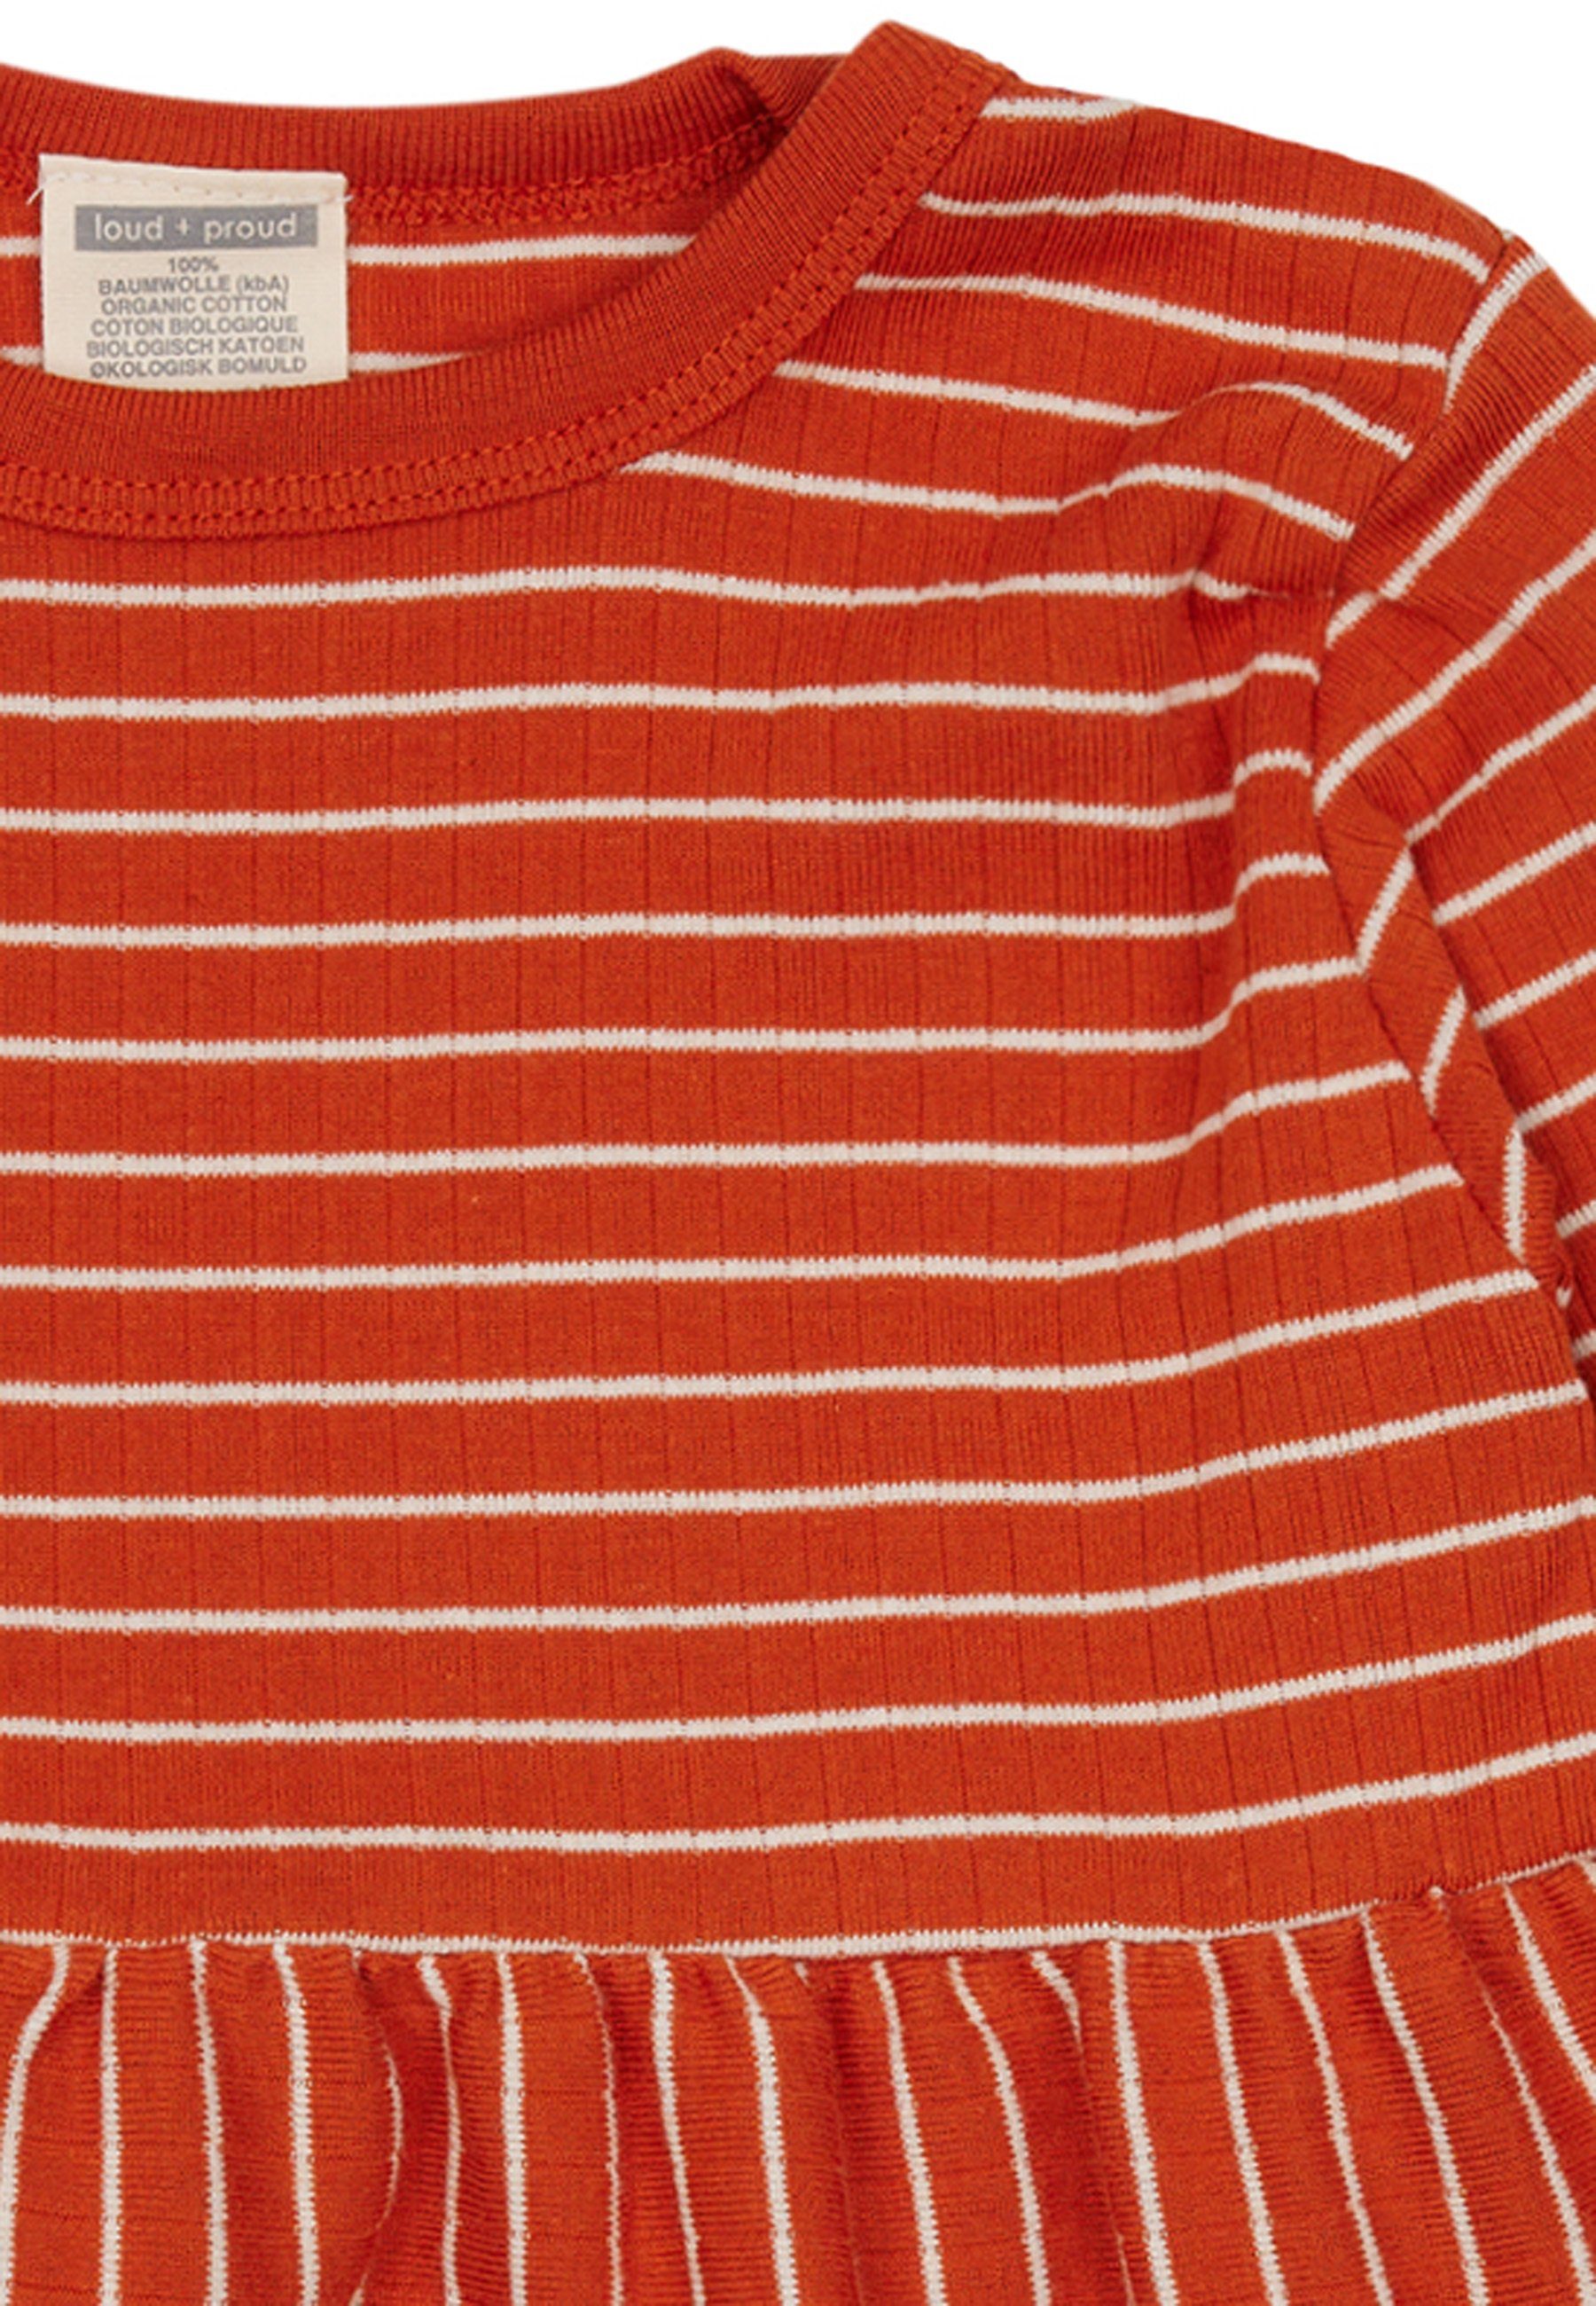 Bio-Baumwolle rot + Ringel-Look GOTS A-Linien-Kleid loud mit proud zertifizierte